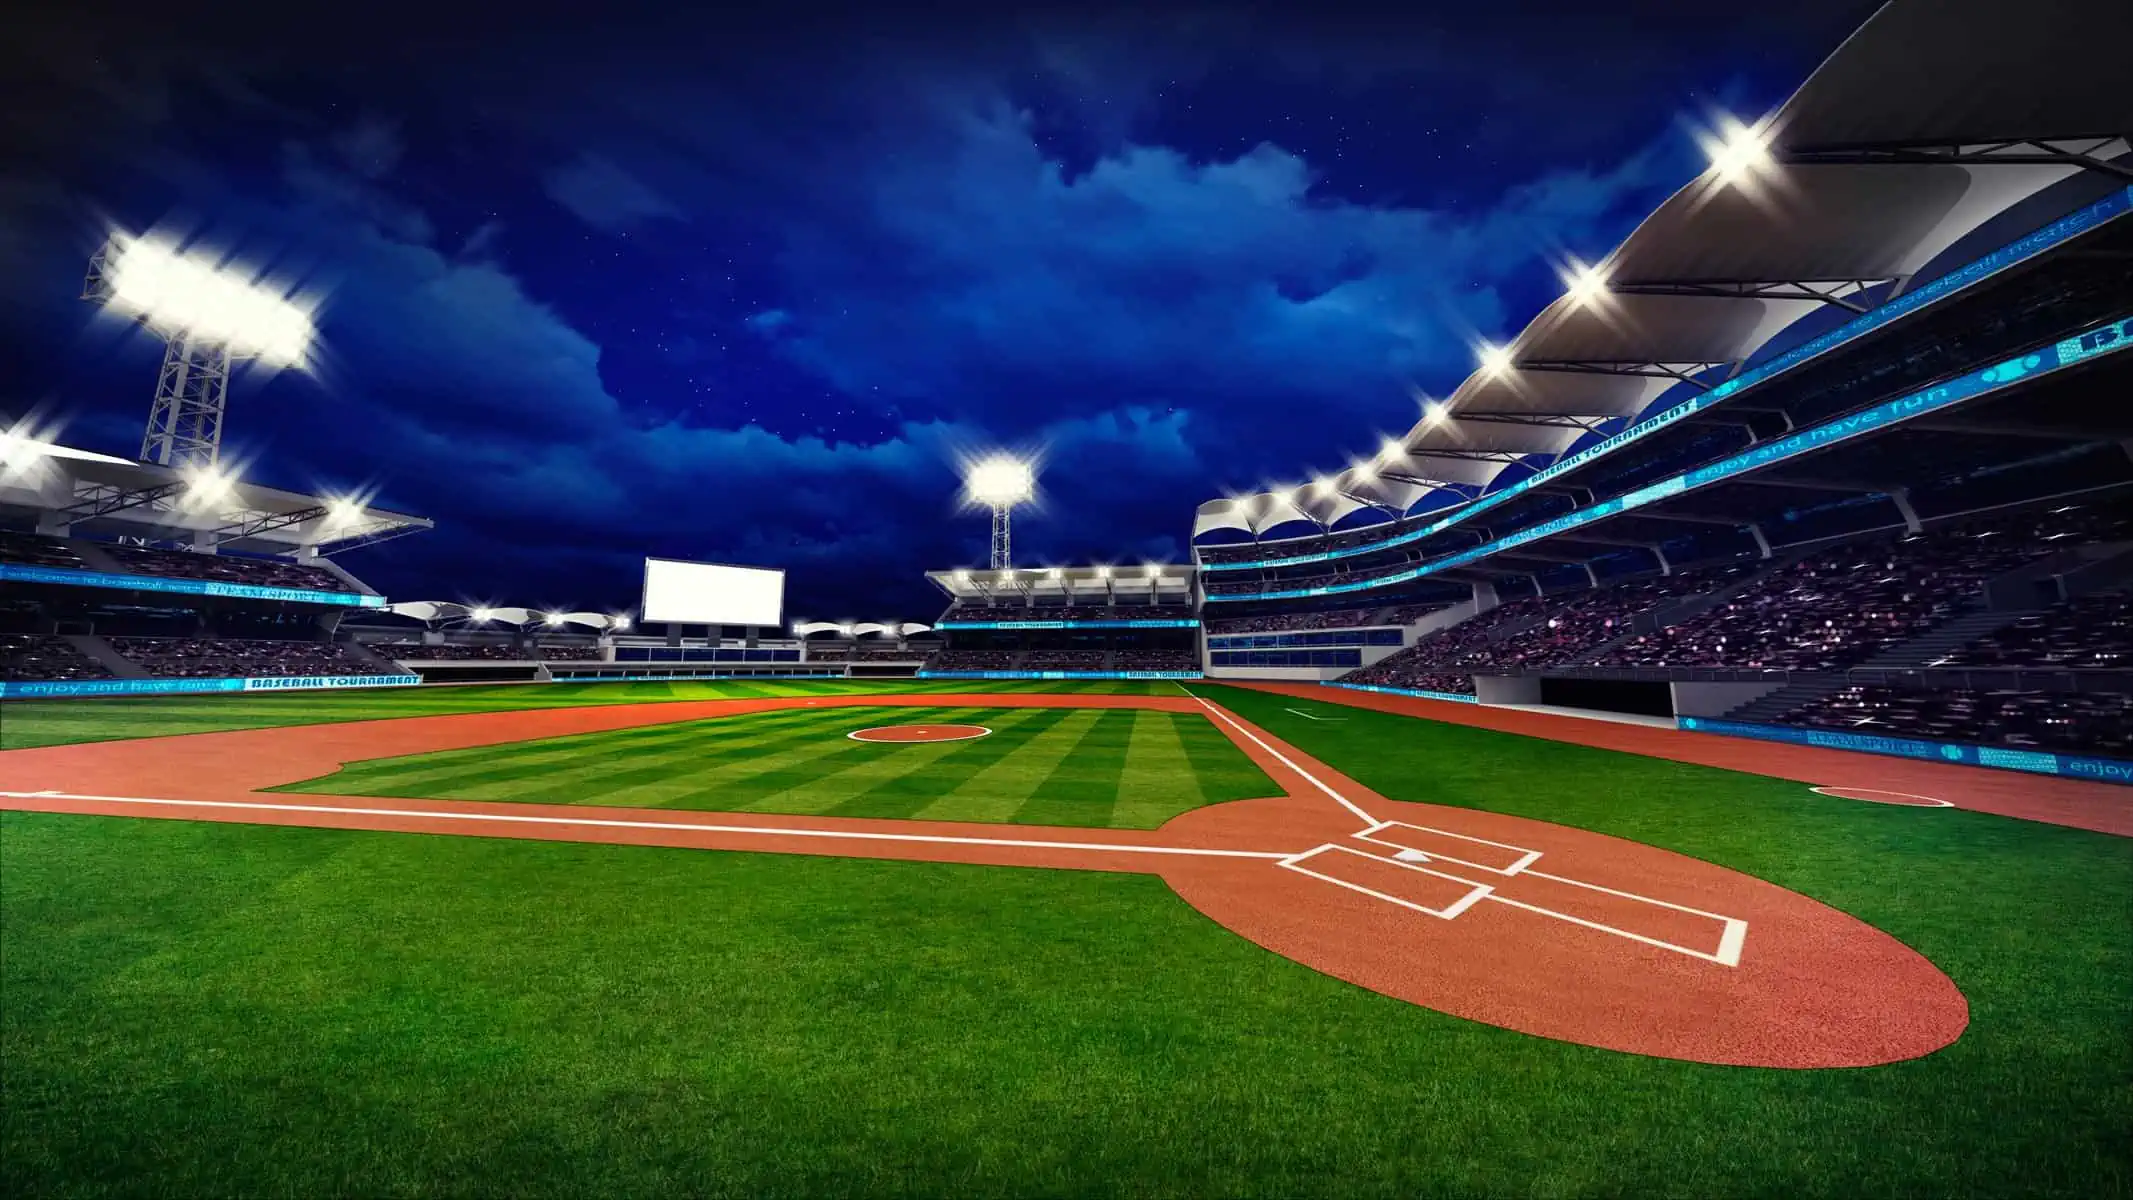 Peloteros Cubano Americanos Invitados a la Serie Intercontinental de Beisbol